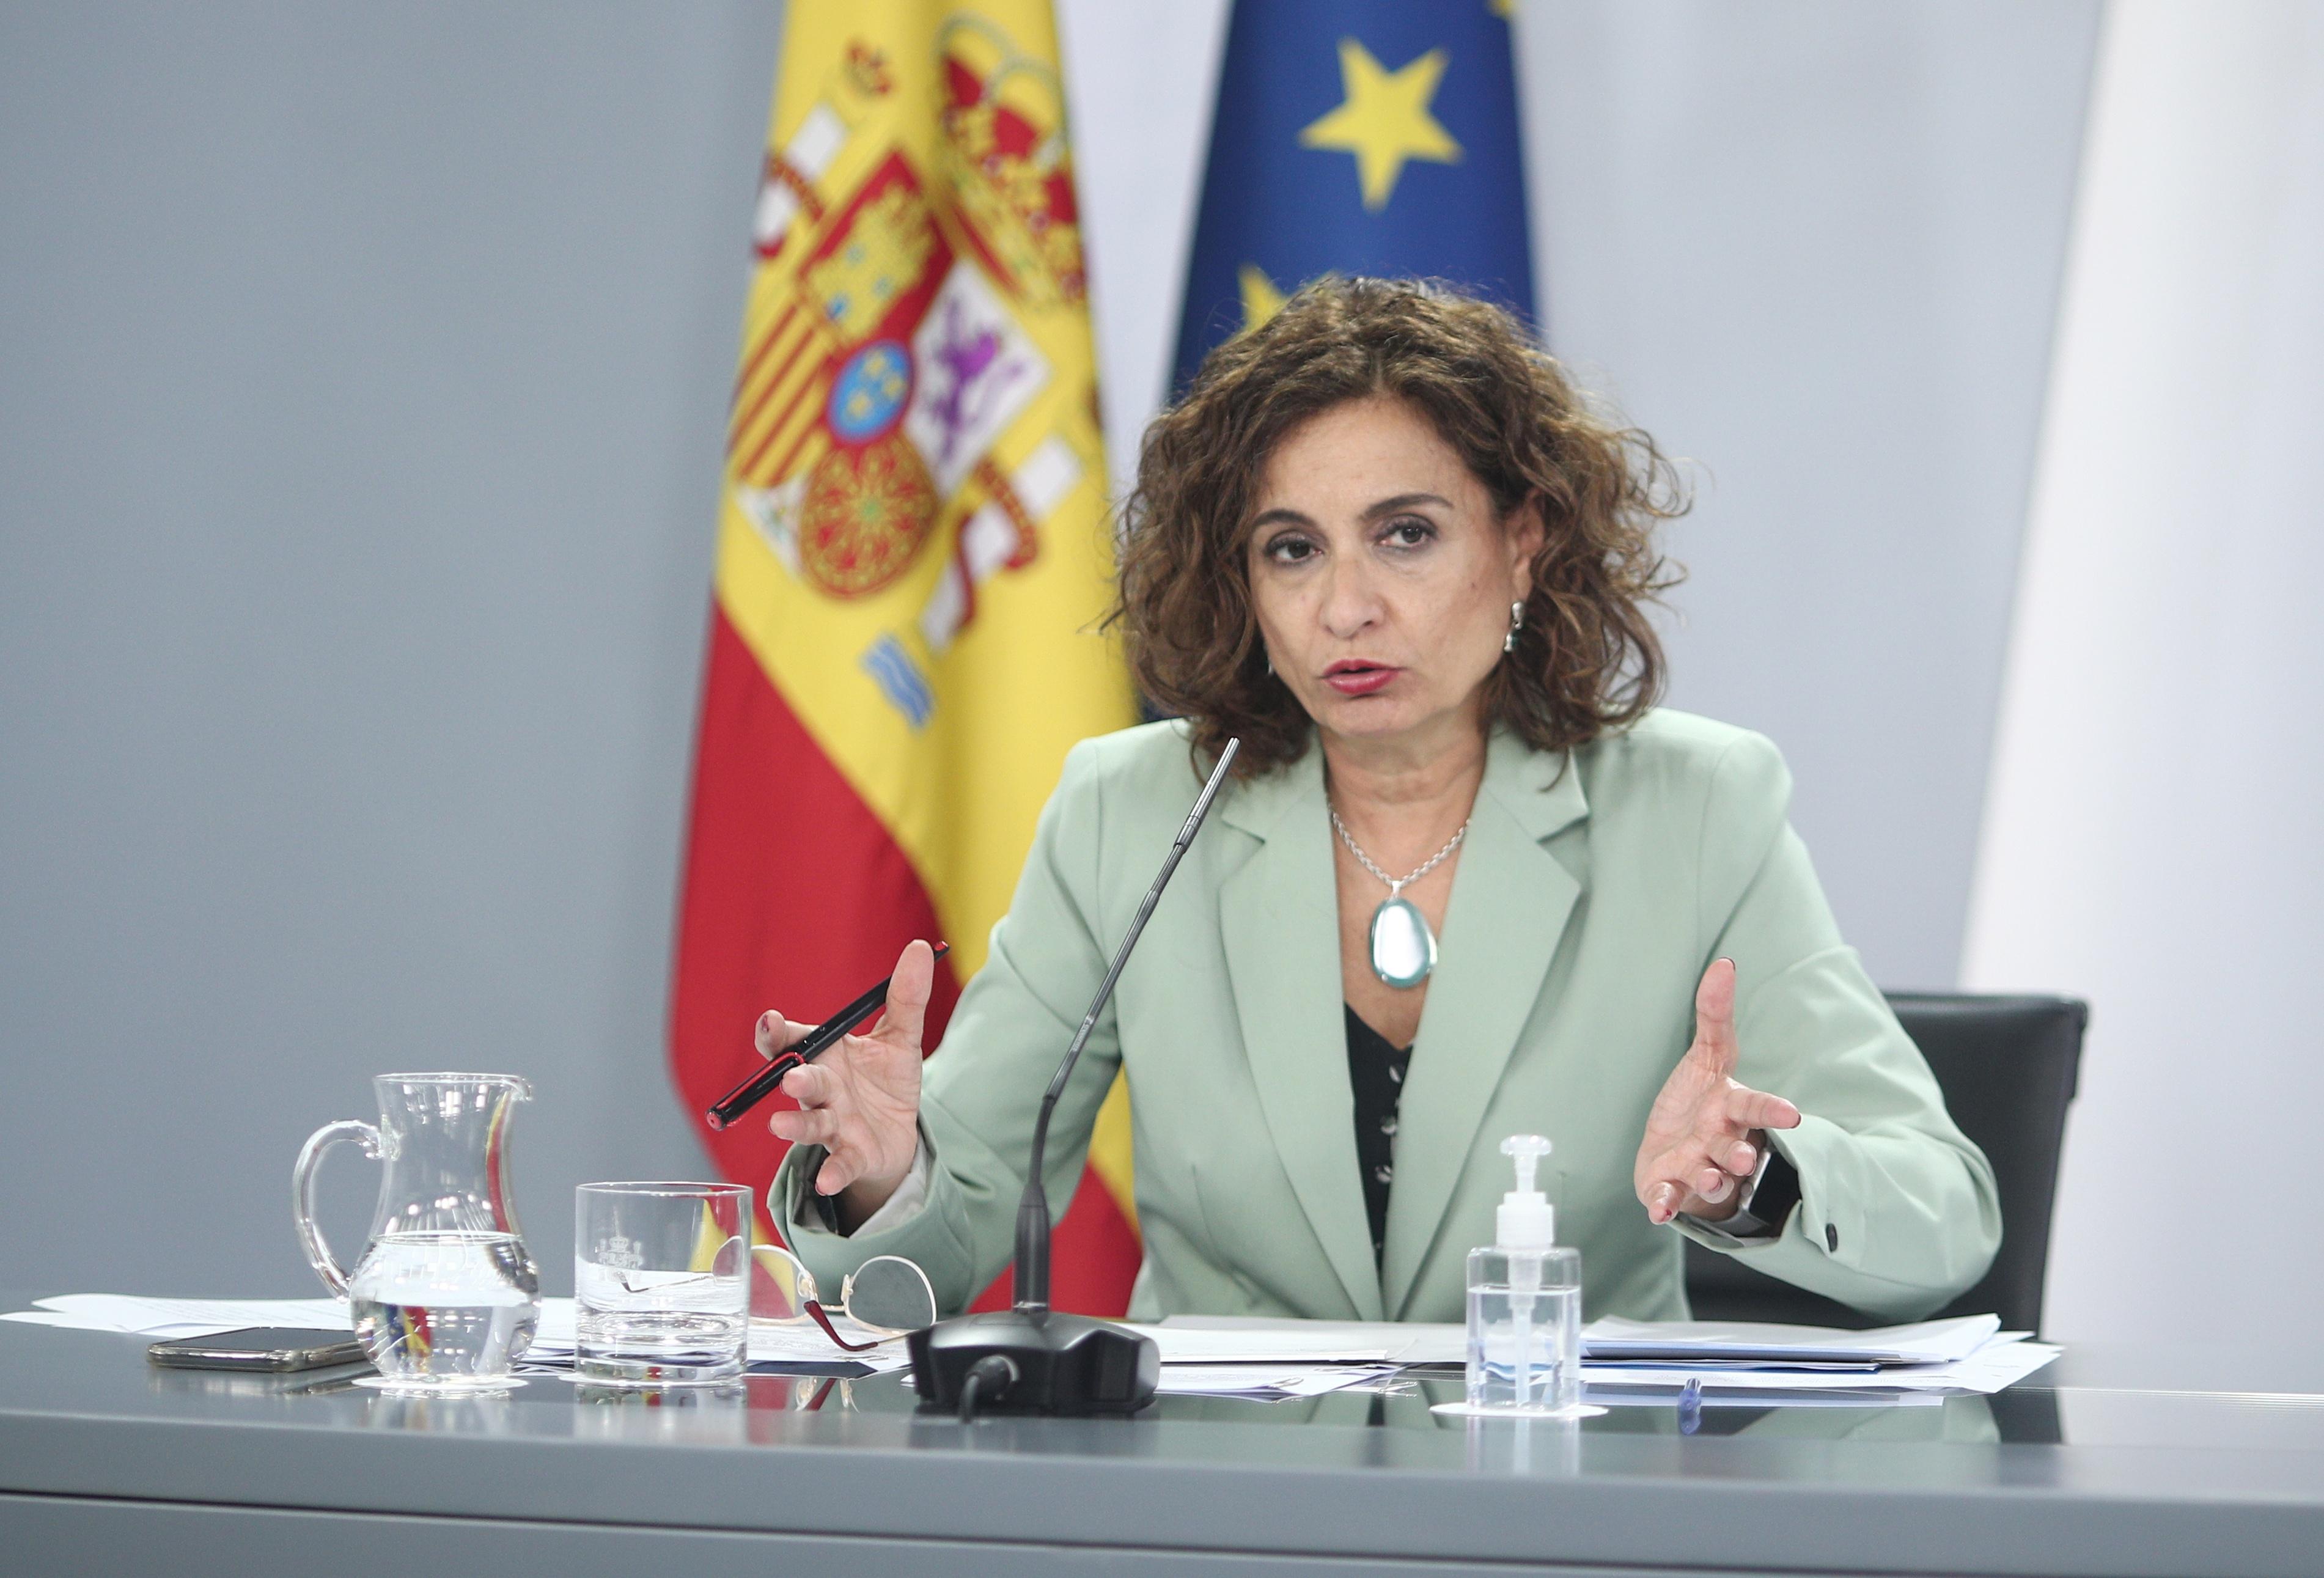 La ministra de Hacienda y portavoz del Gobierno, María Jesús Montero, en la rueda de prensa tras el Consejo de Ministros. Europa Press